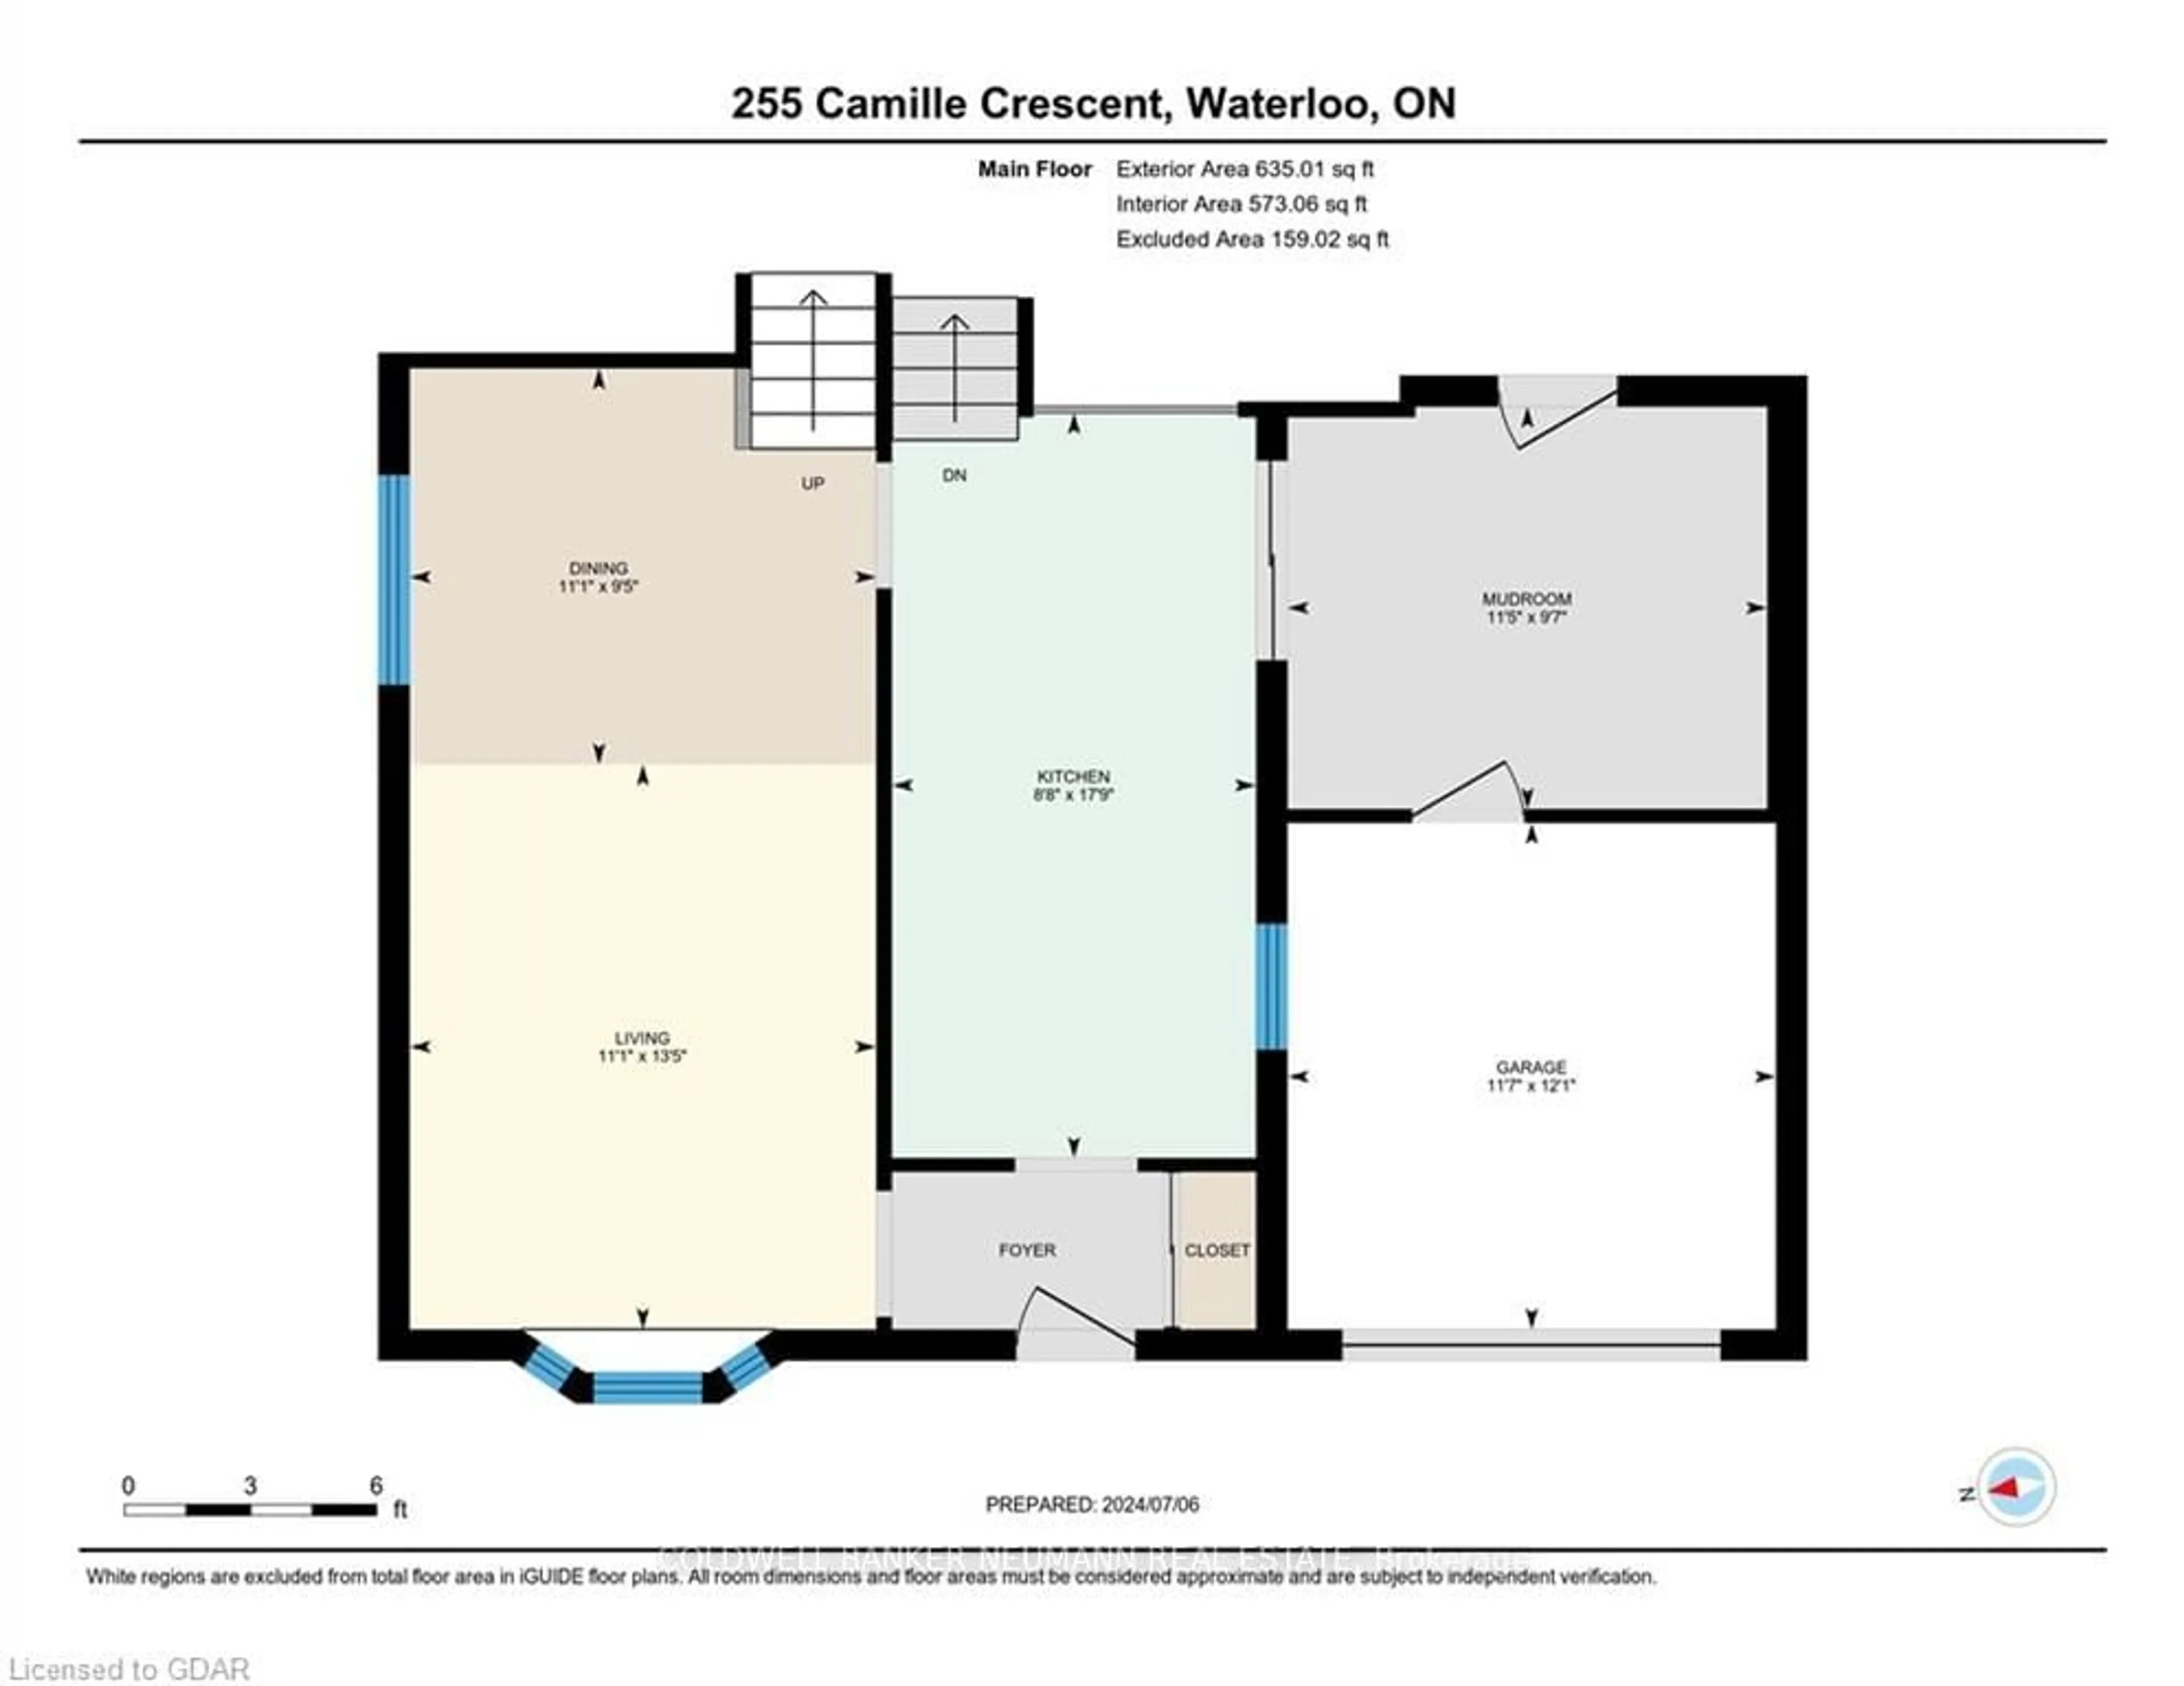 Floor plan for 255 Camille Cres, Waterloo Ontario N2K 3B7